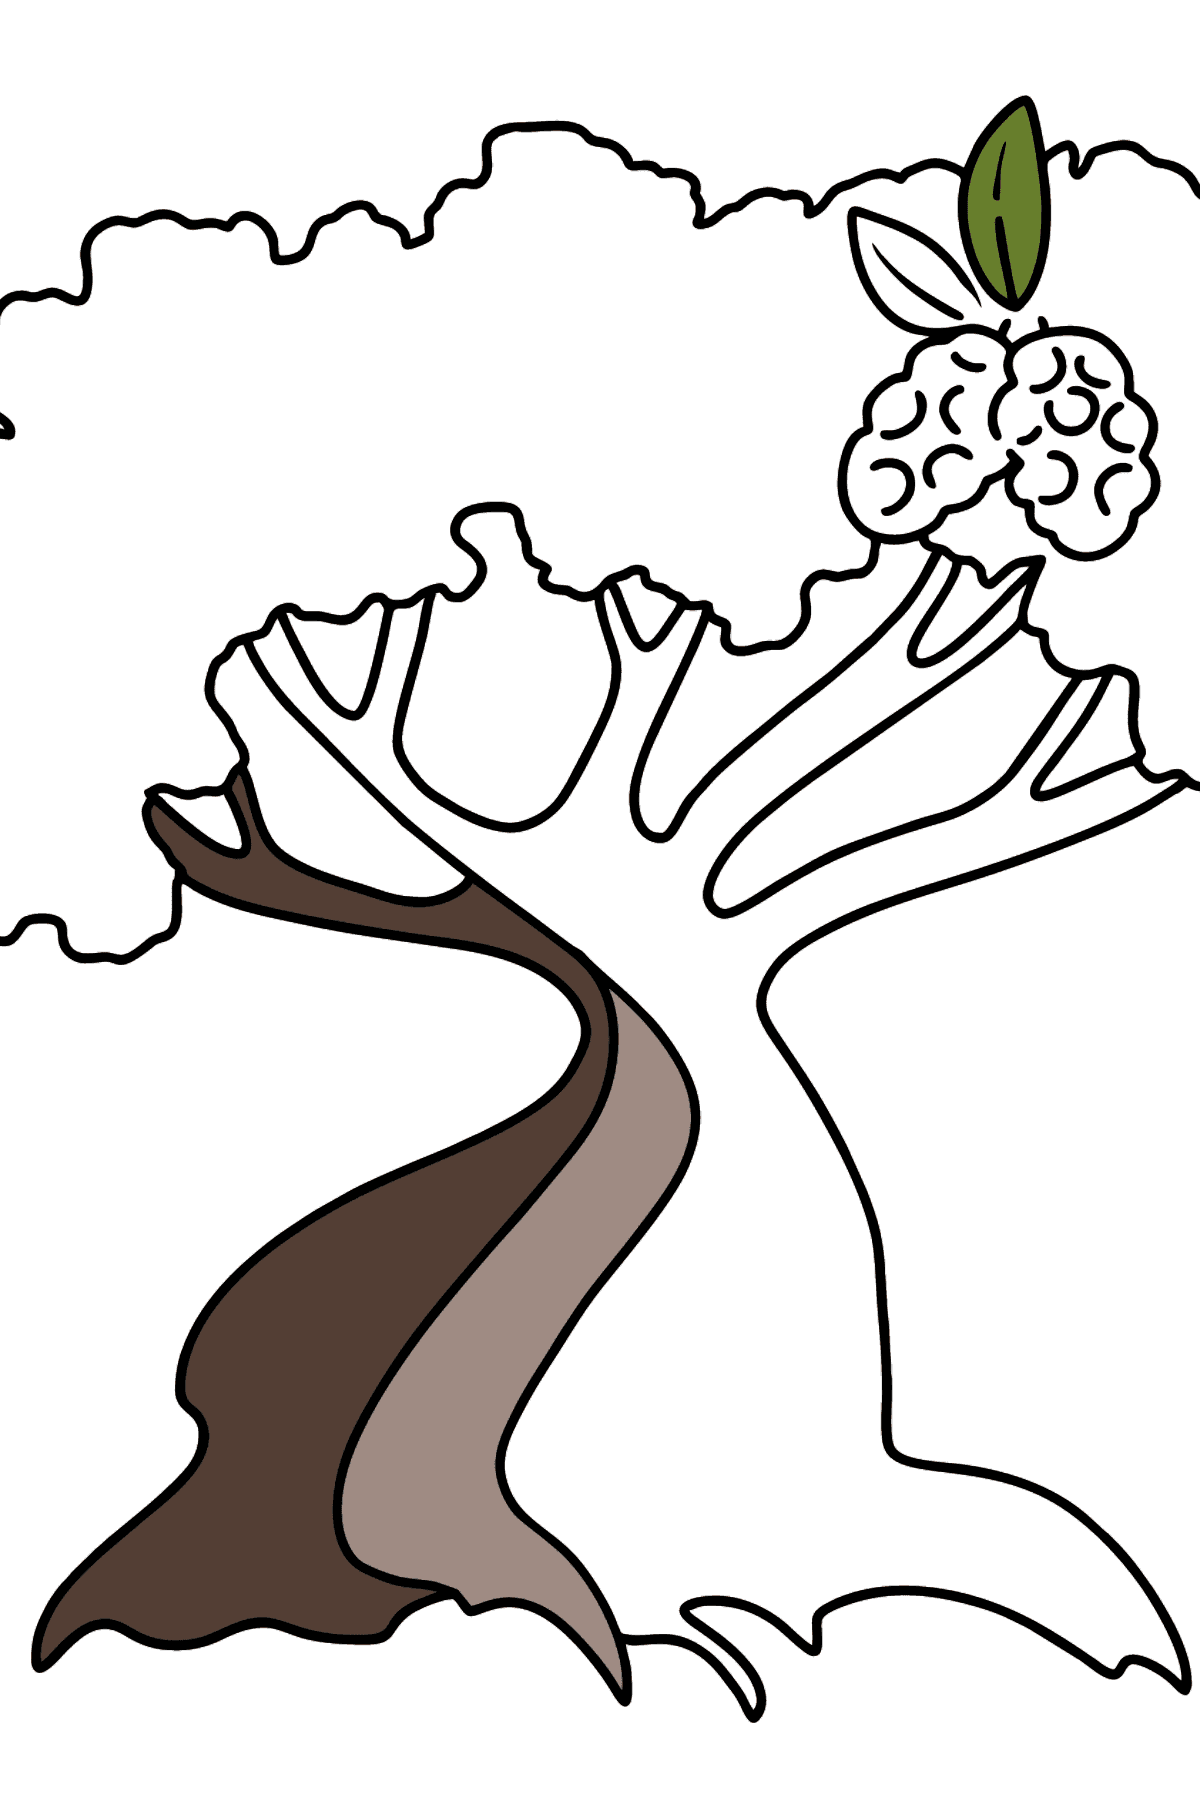 Desenho para colorir do Cotton Tree - Imagens para Colorir para Crianças